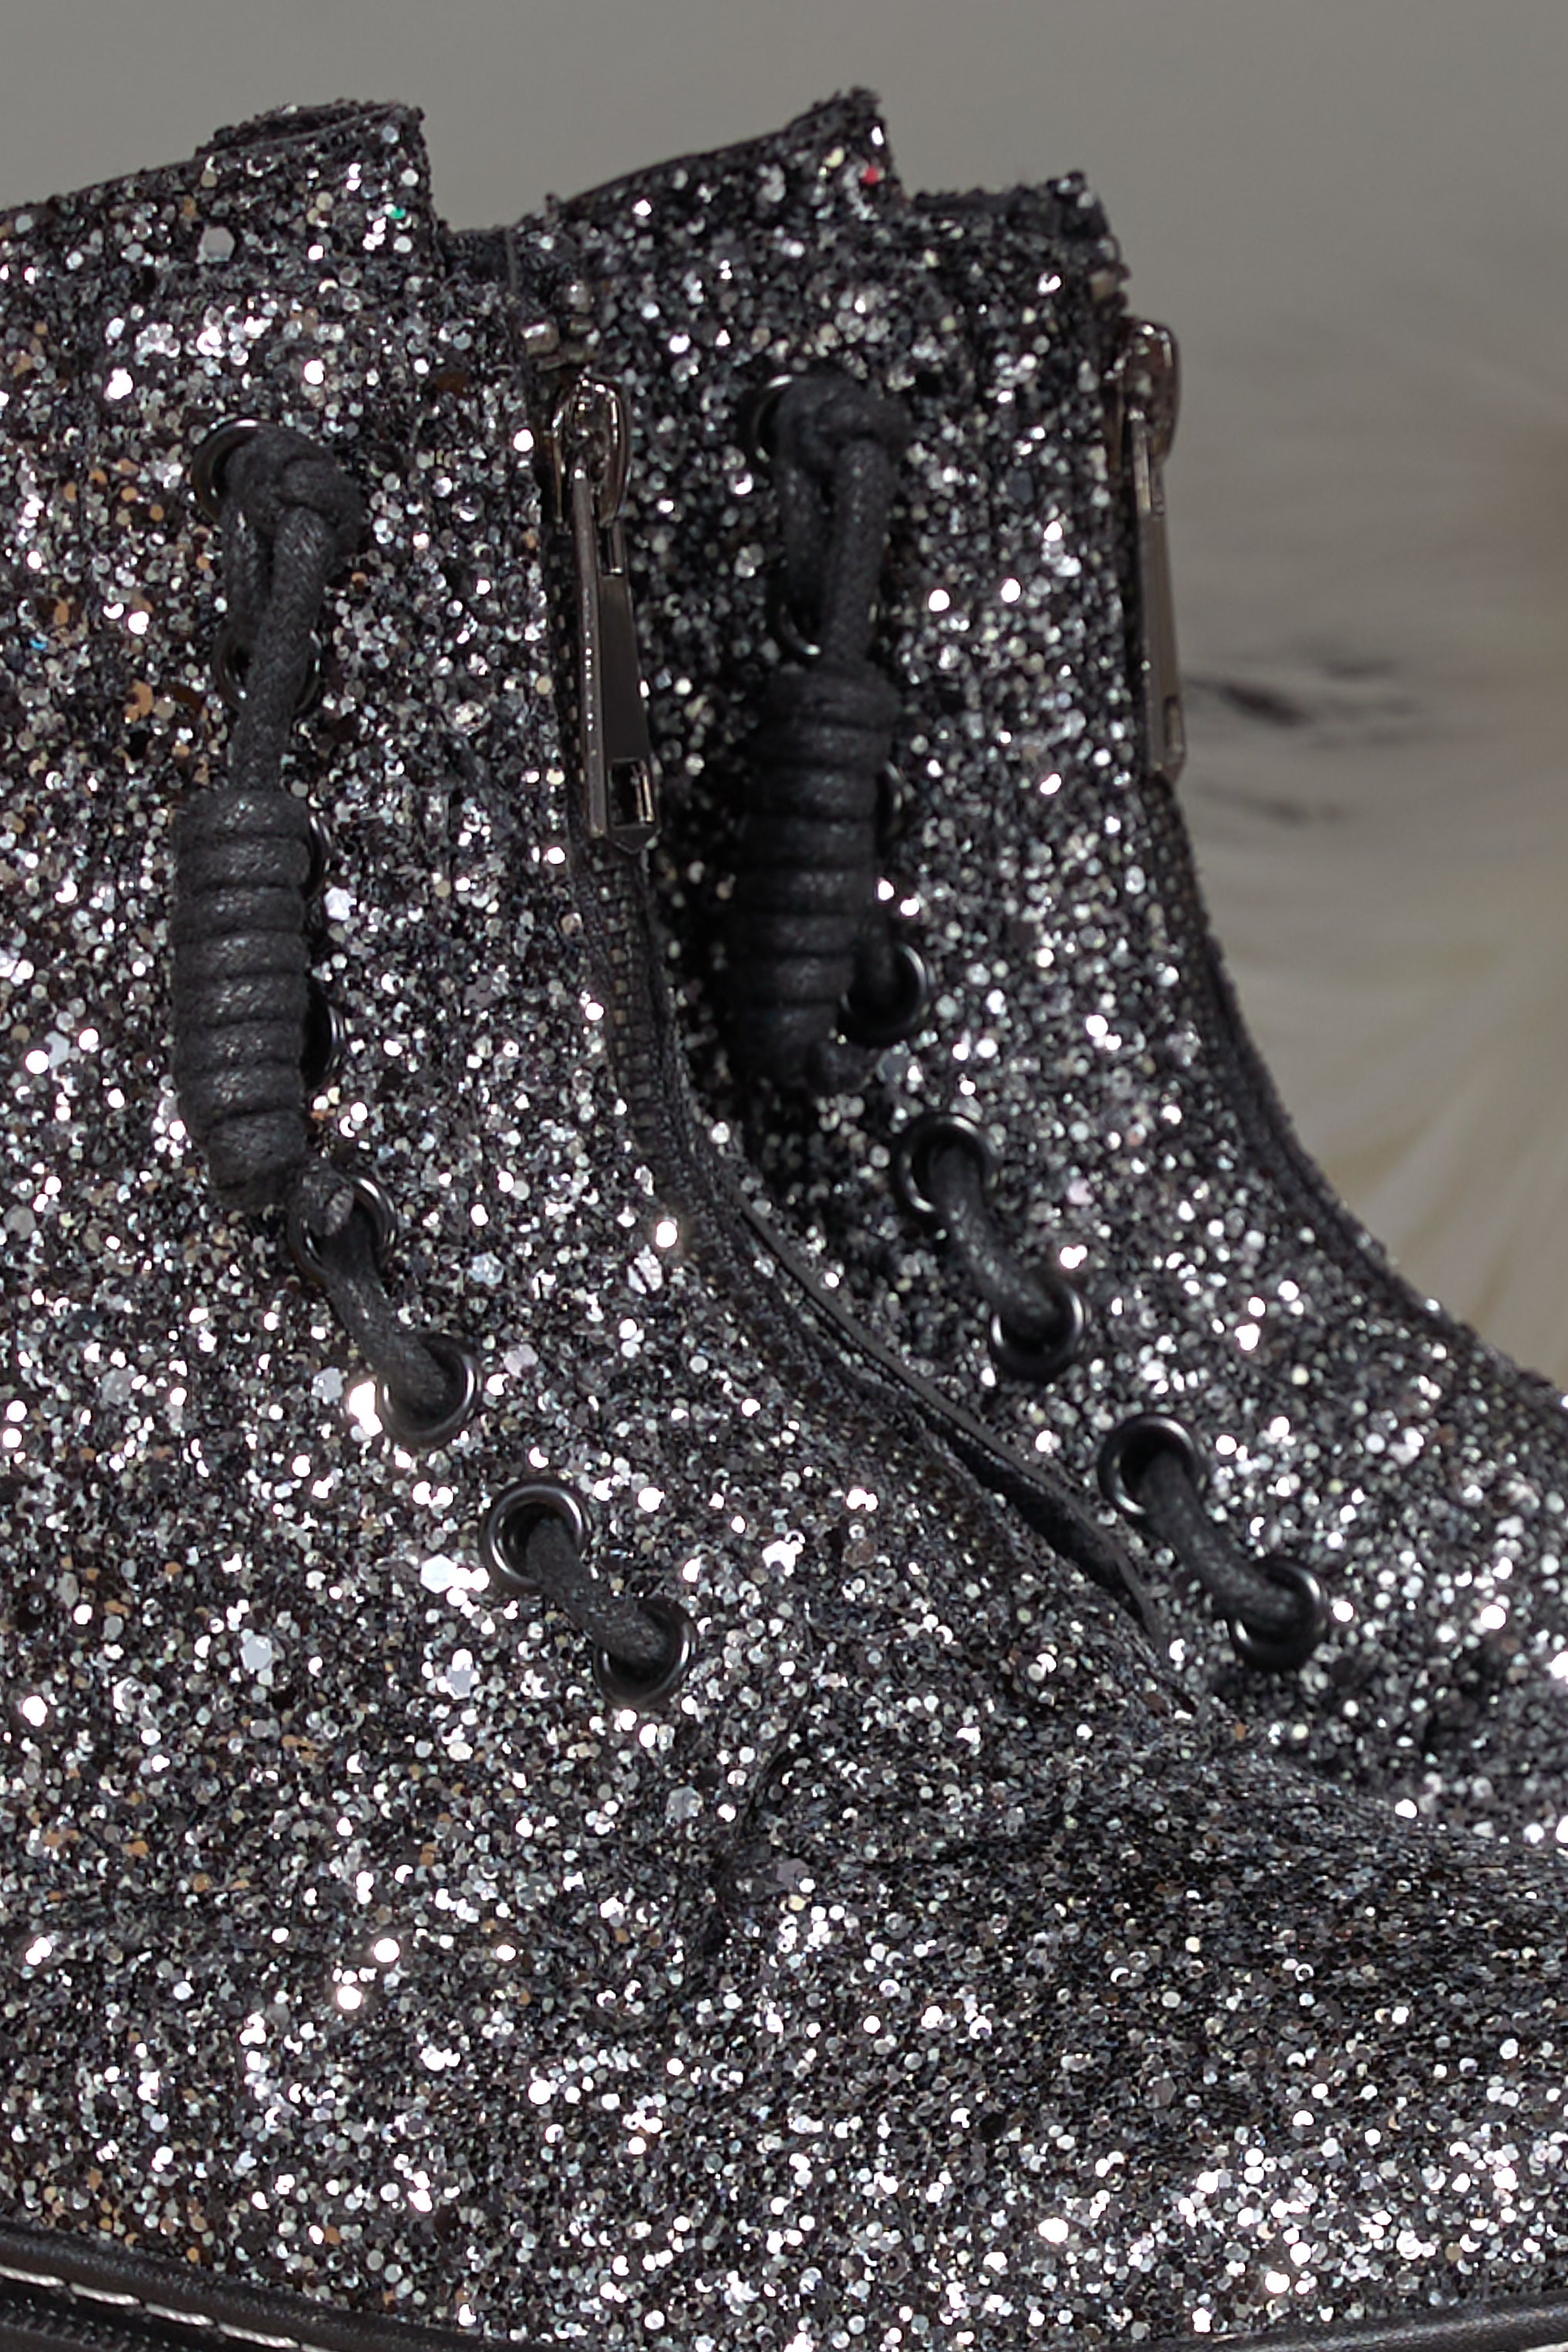 Boots "Glitter", black-silver